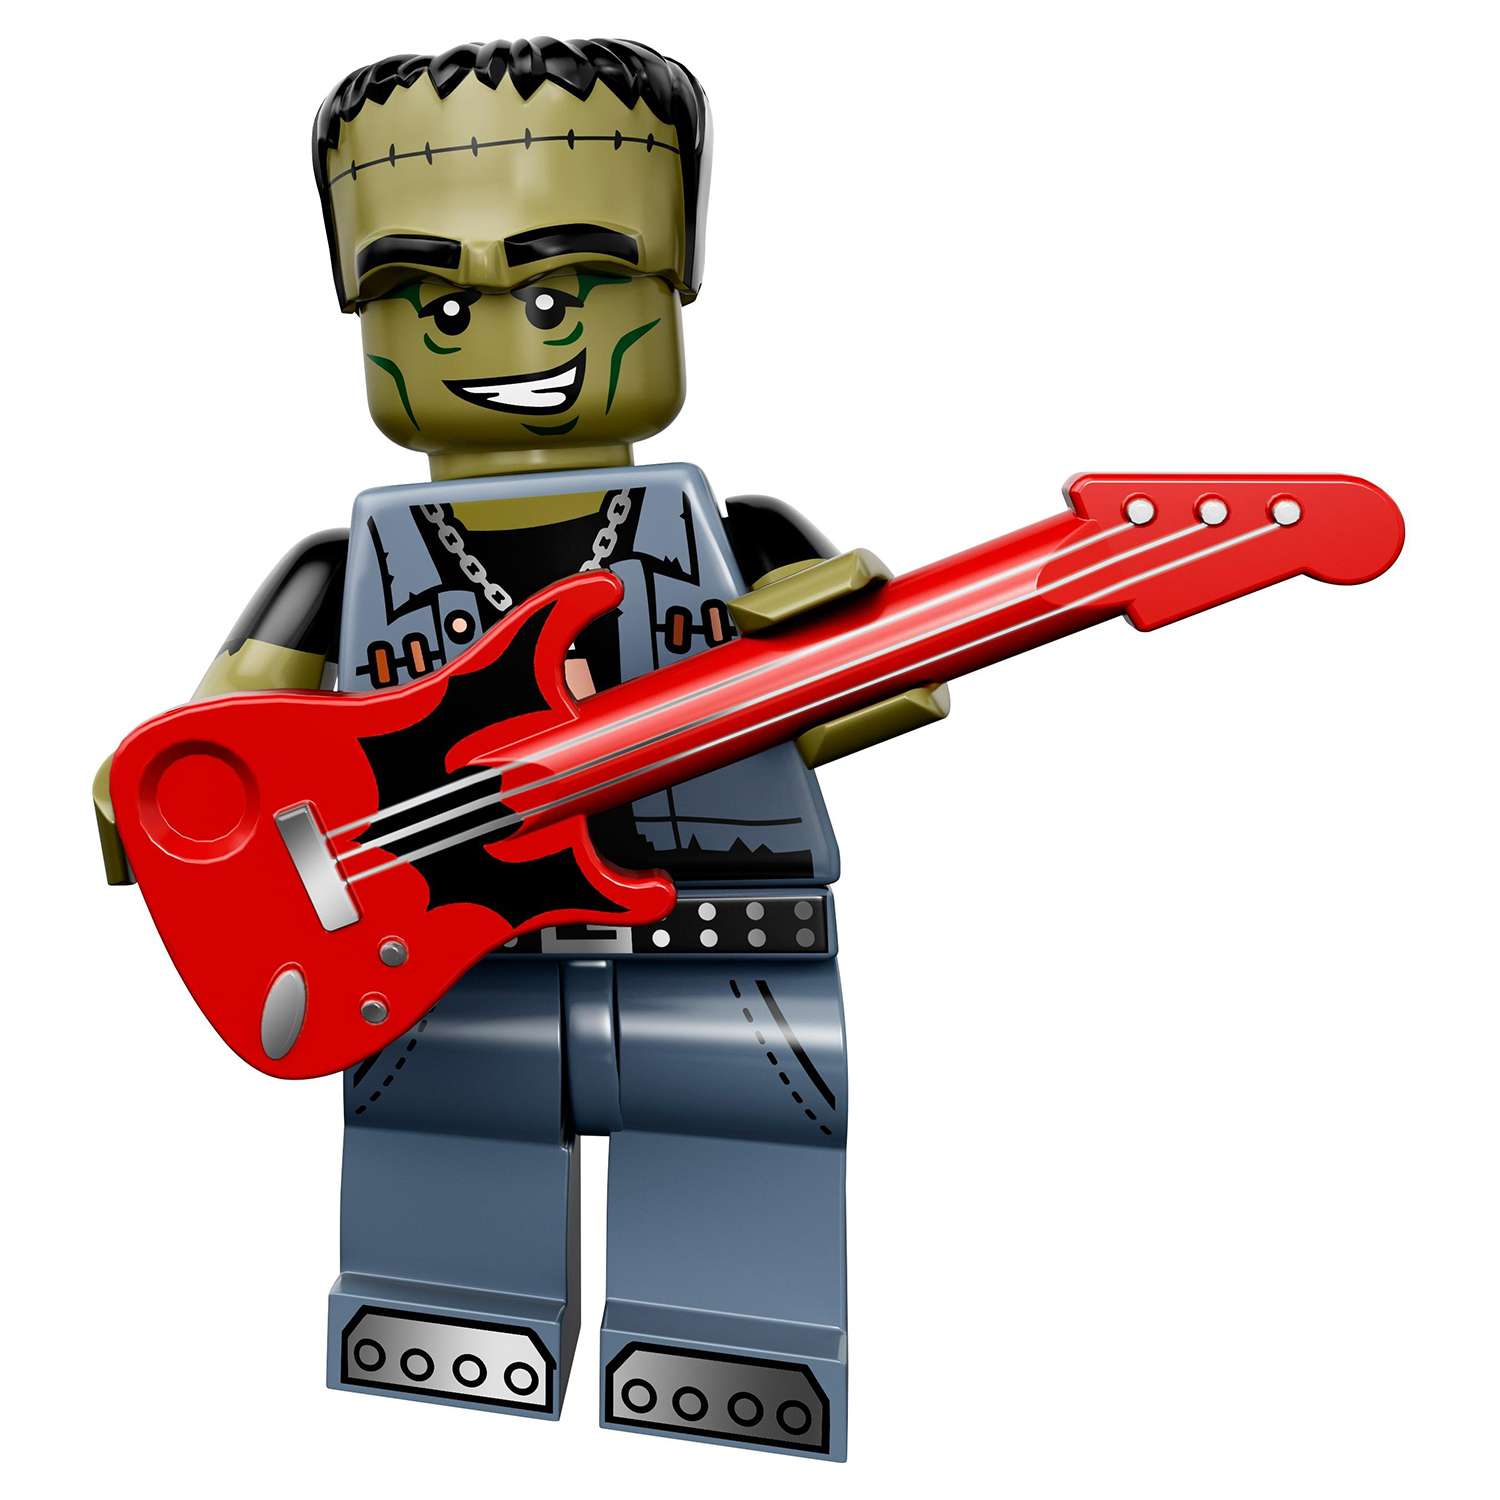 Конструктор LEGO Minifigures серия 14: Монстры (71010) в непрозрачной упаковке (Сюрприз) - фото 11